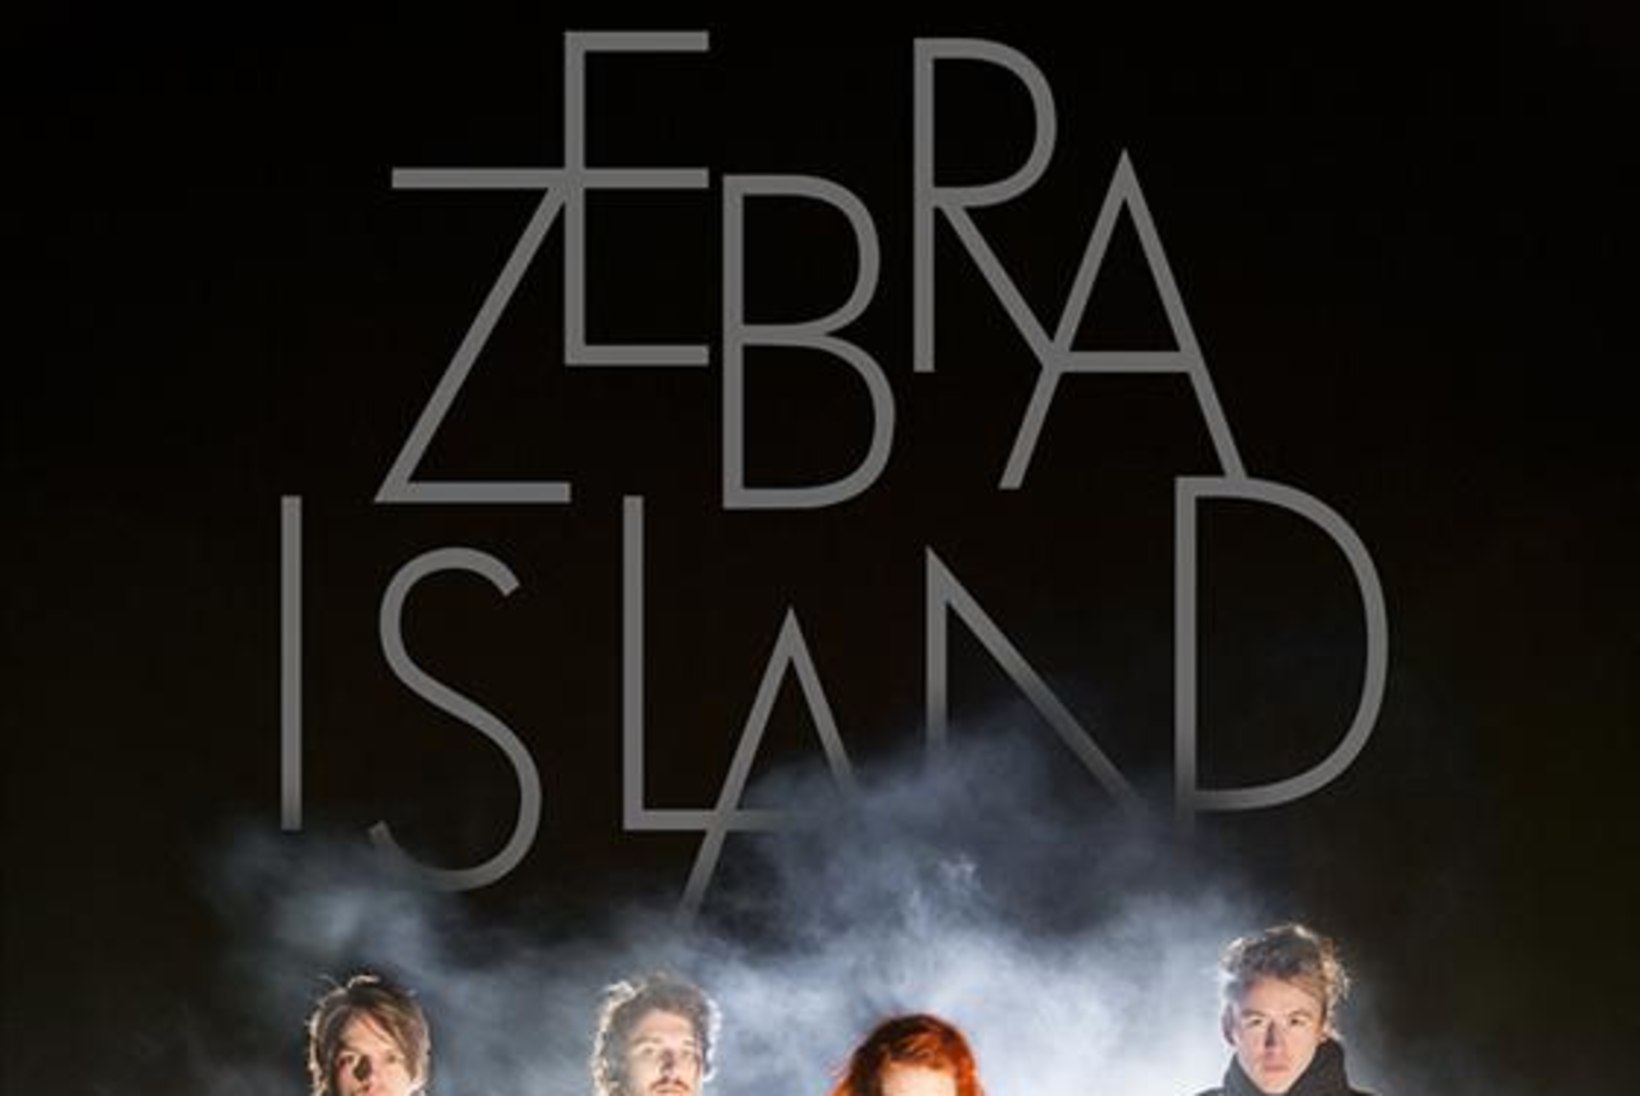 Zebra Island väljastab esikalbumi